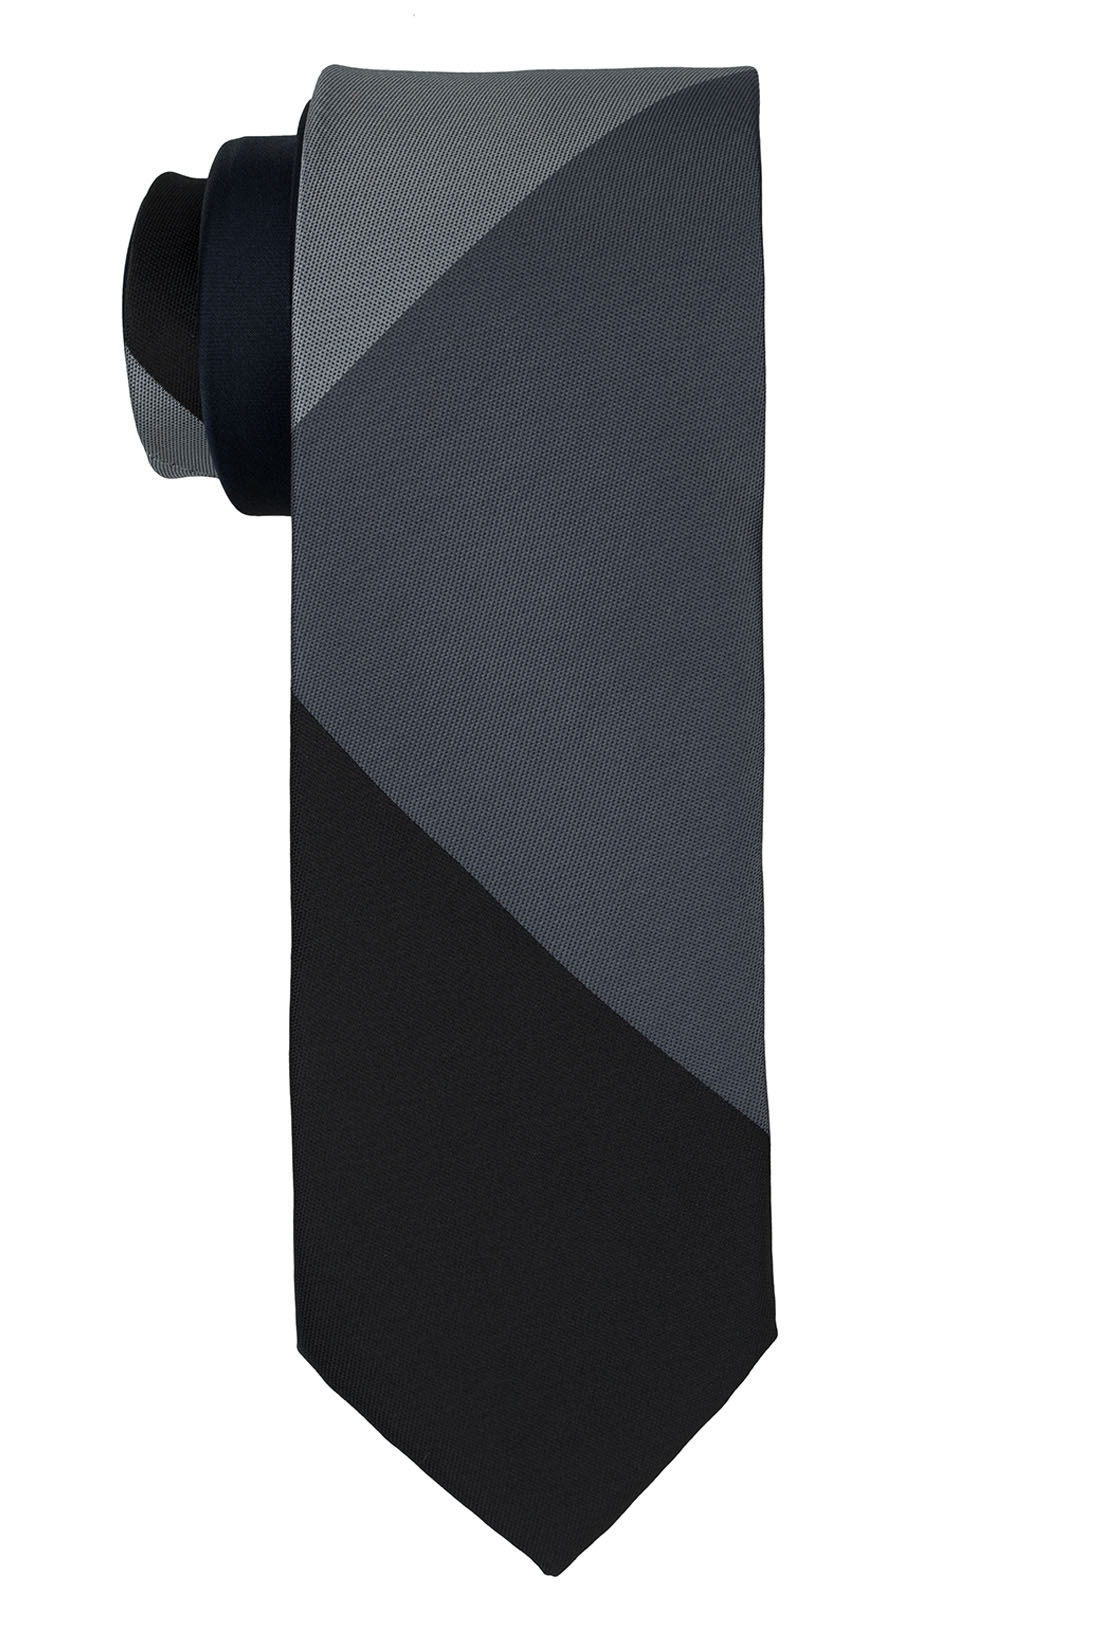 The Tie Hub Perseus Checks Black And Grey Silk Necktie